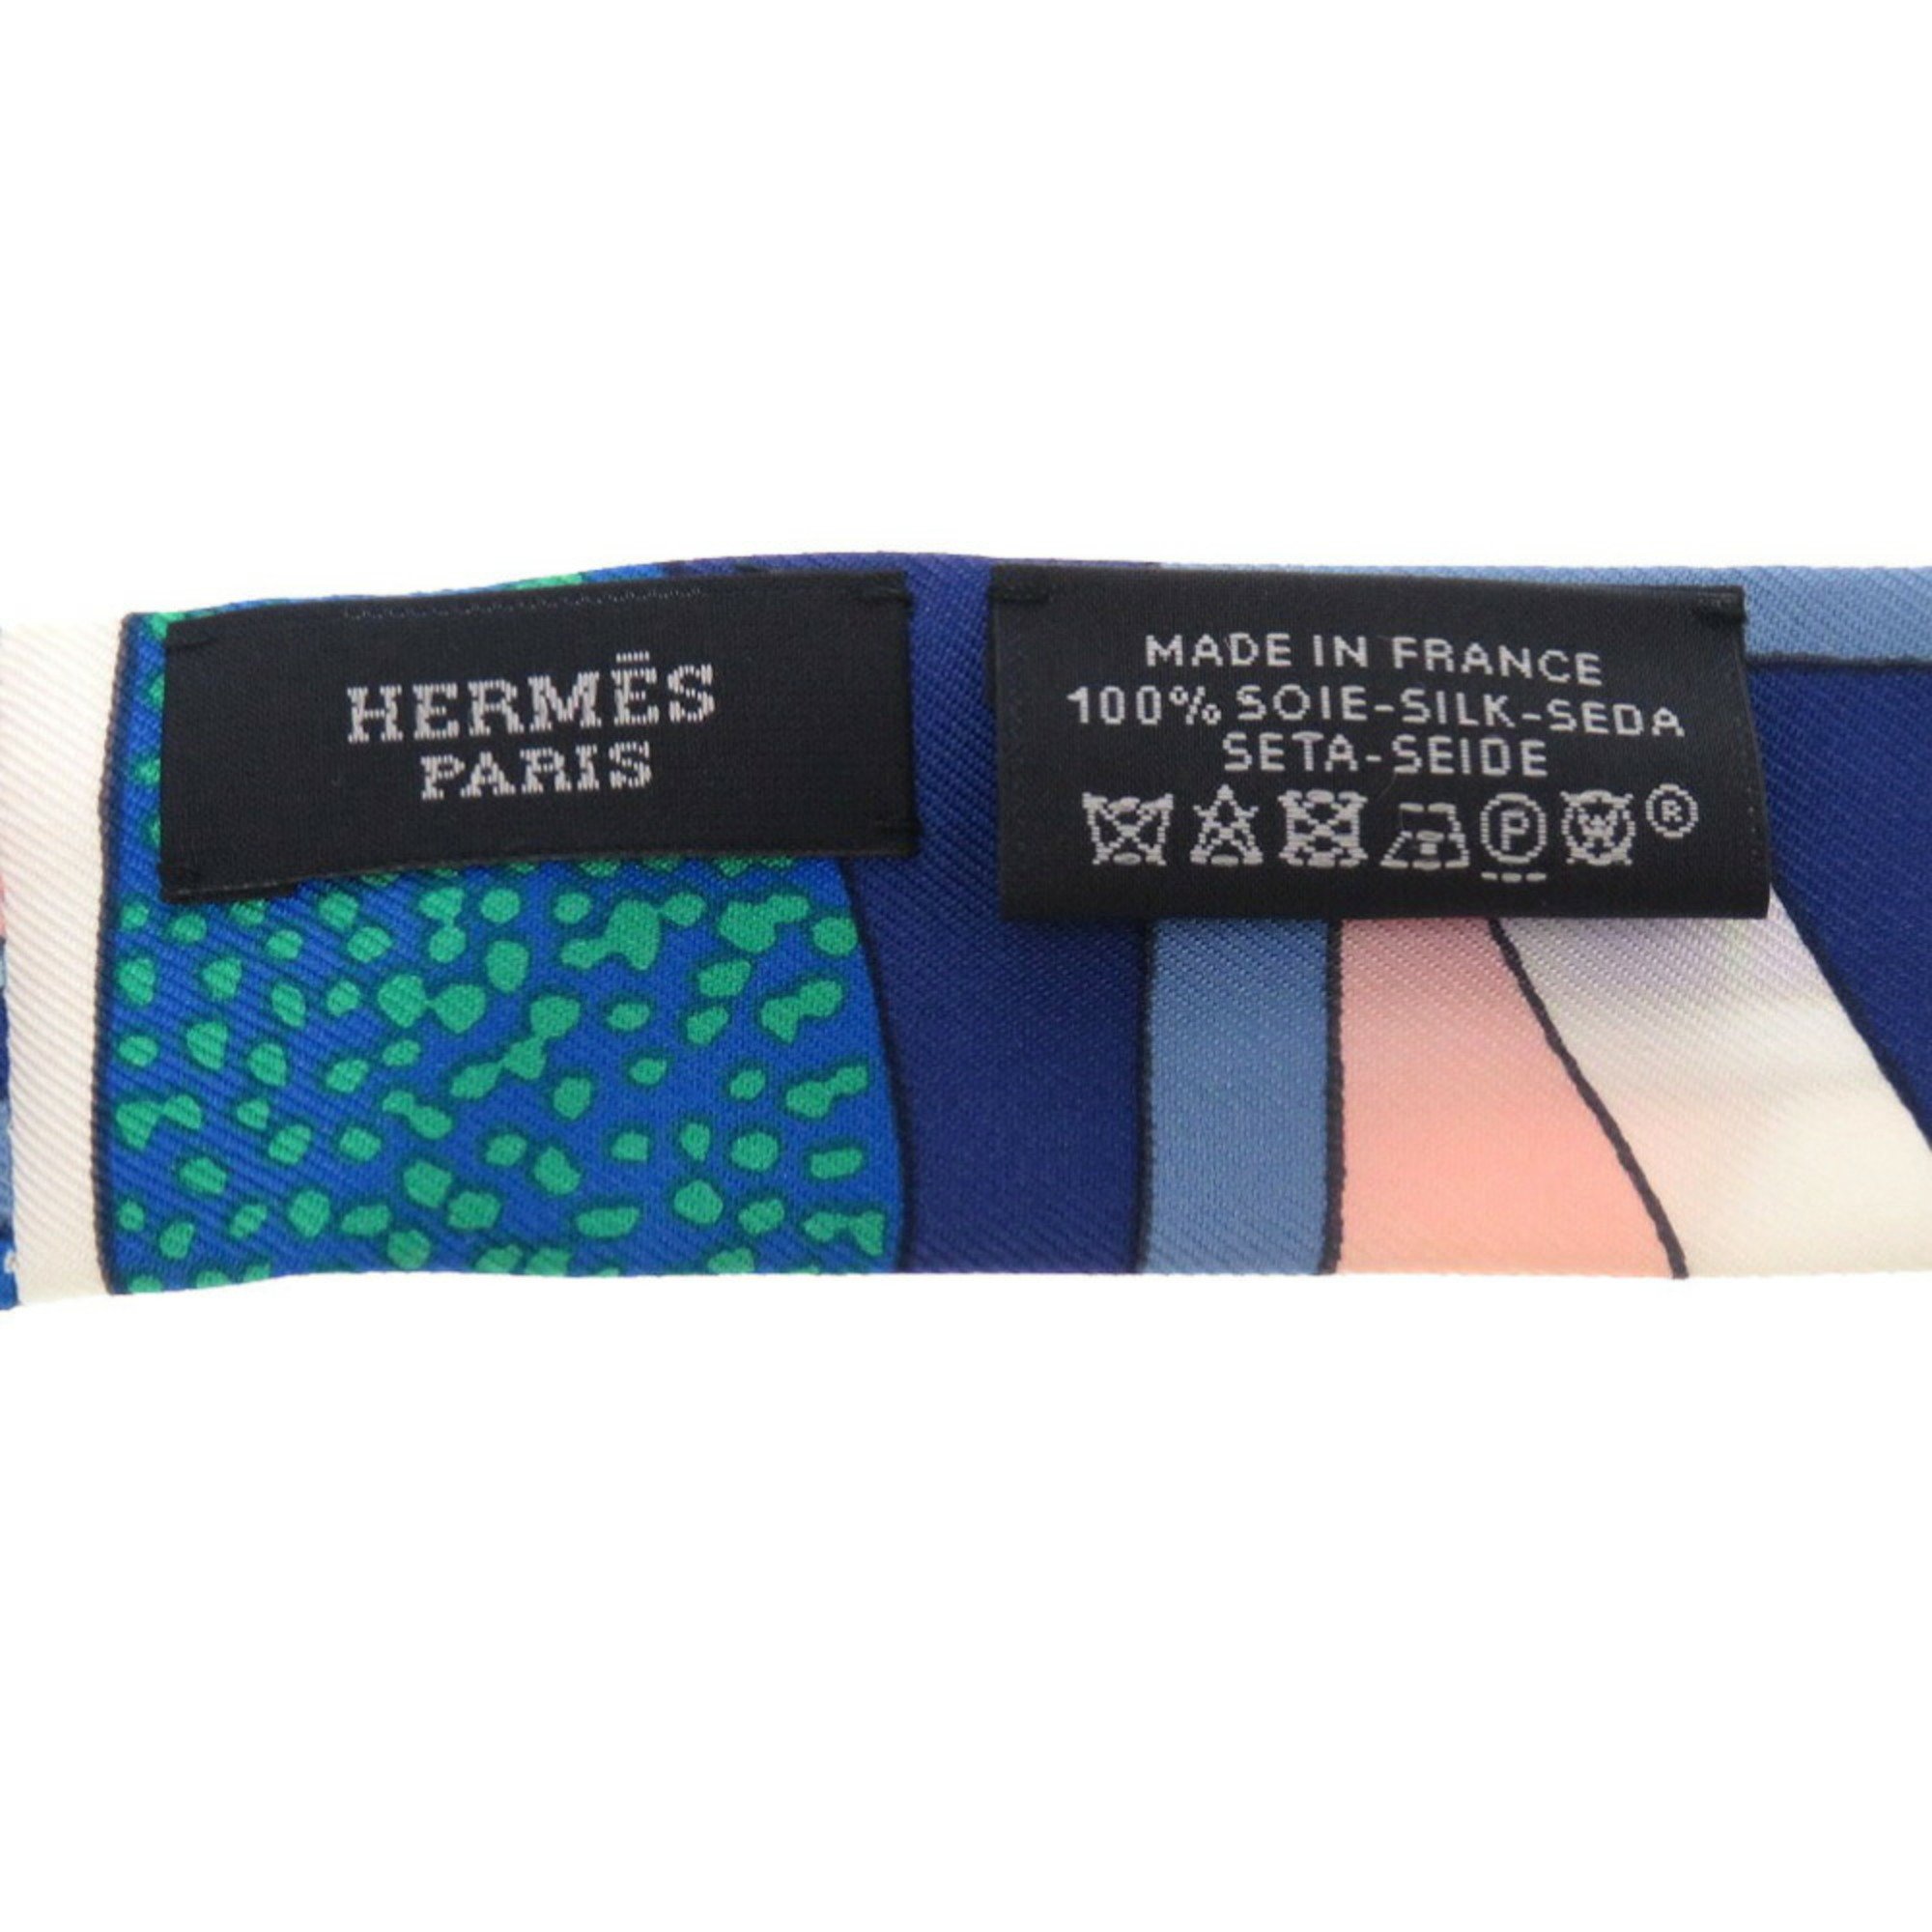 Hermes Twilly Doll Silk Blue Scarf Muffler Ribbon